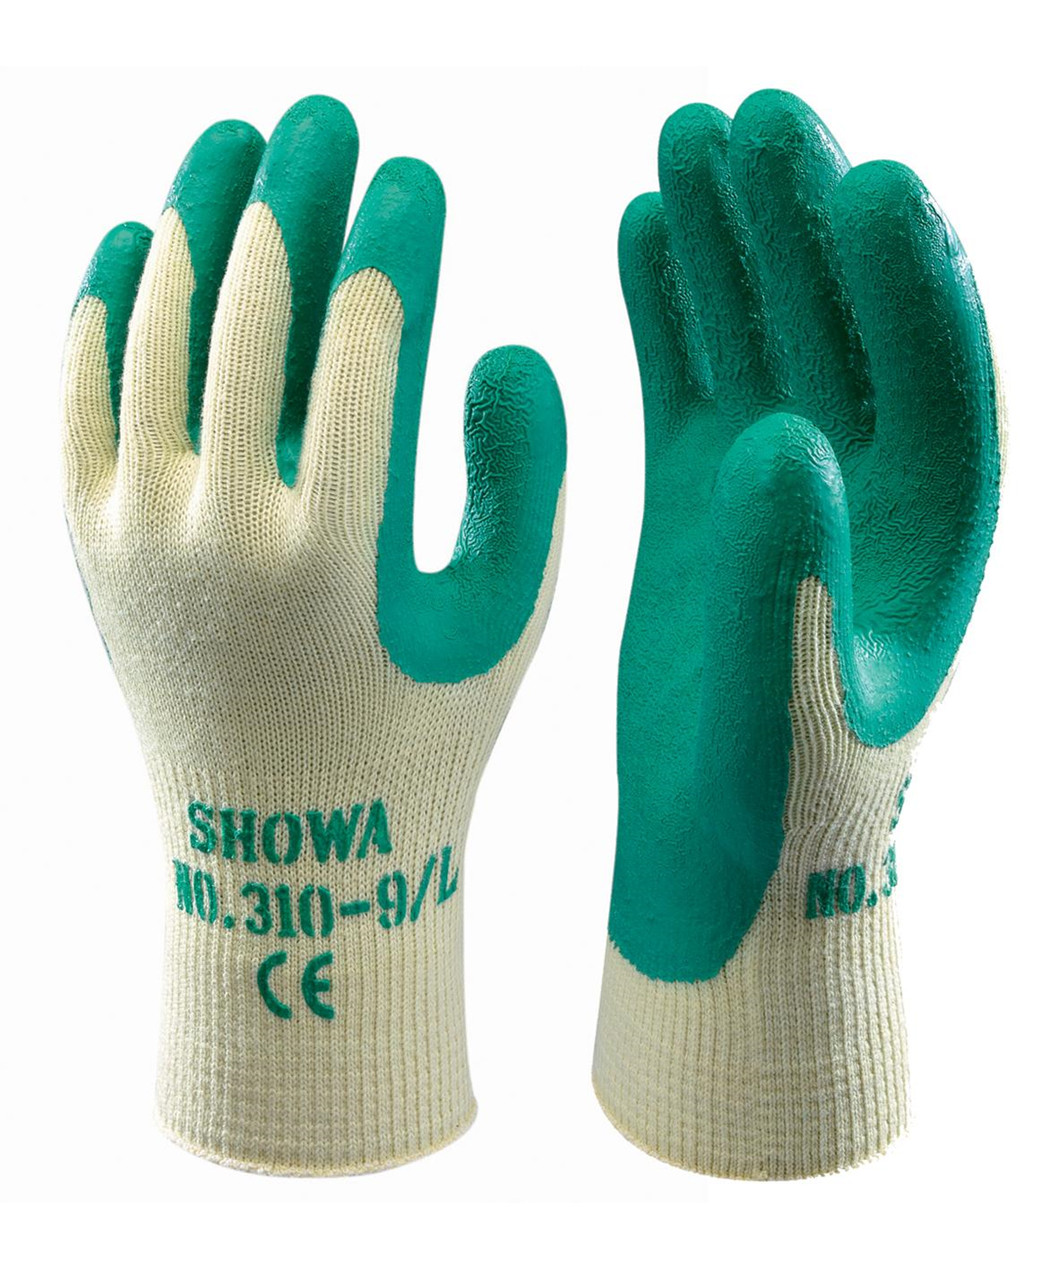 Se Showa 310 Grip handske (10) hos Specialbutikken